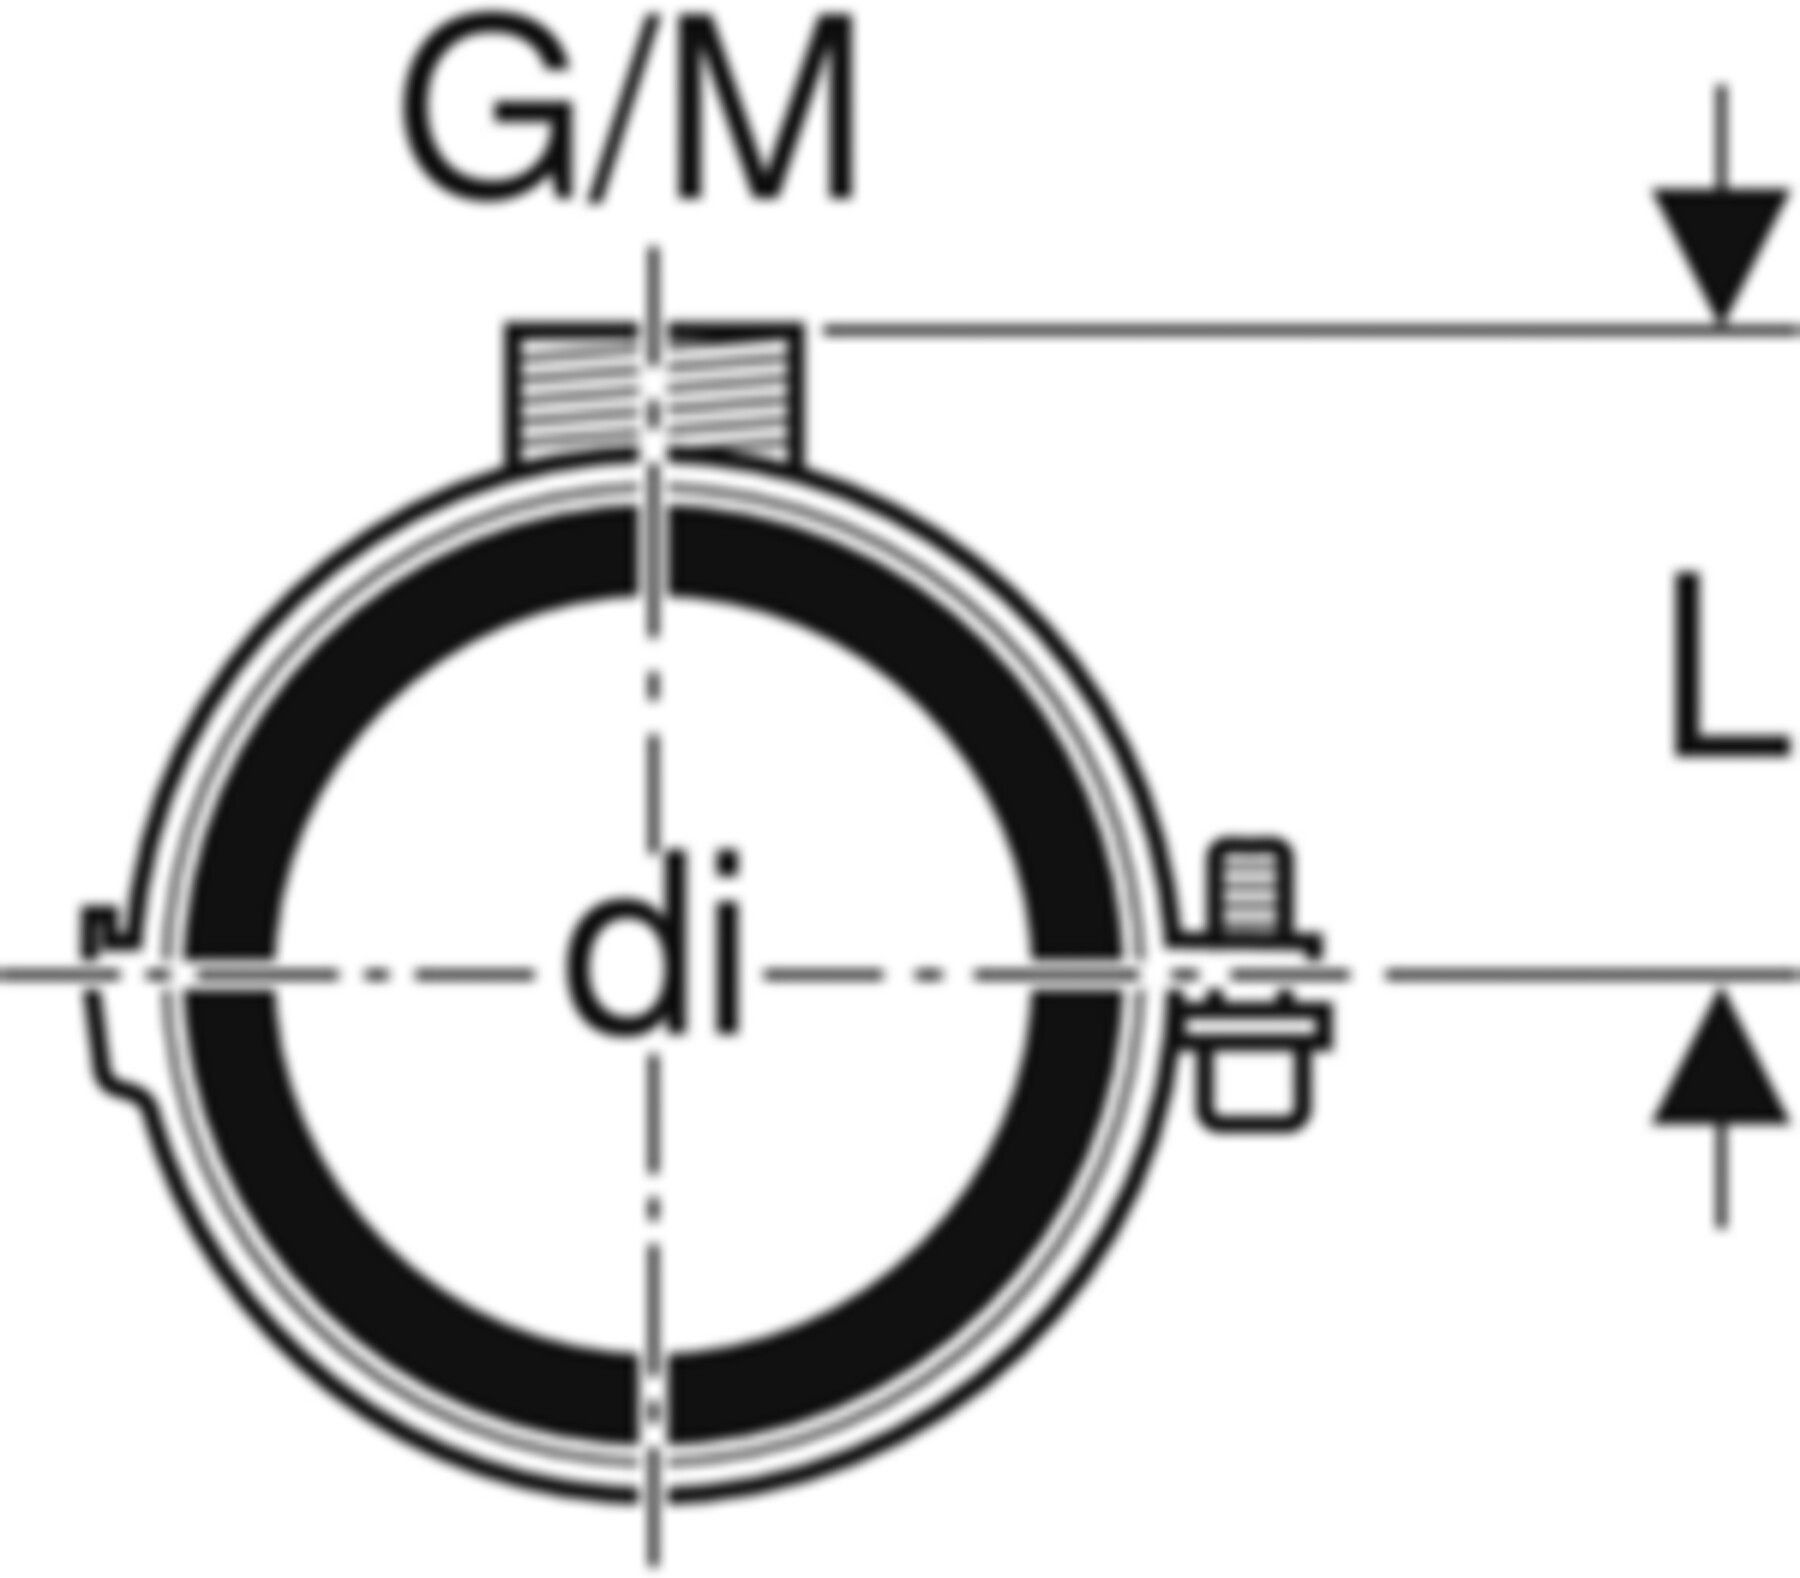 Rohrschelle mit Dämmeinlage d 90mm G/M 1/2"/M10 308.812.26.1 - Geberit-PE-Formstücke